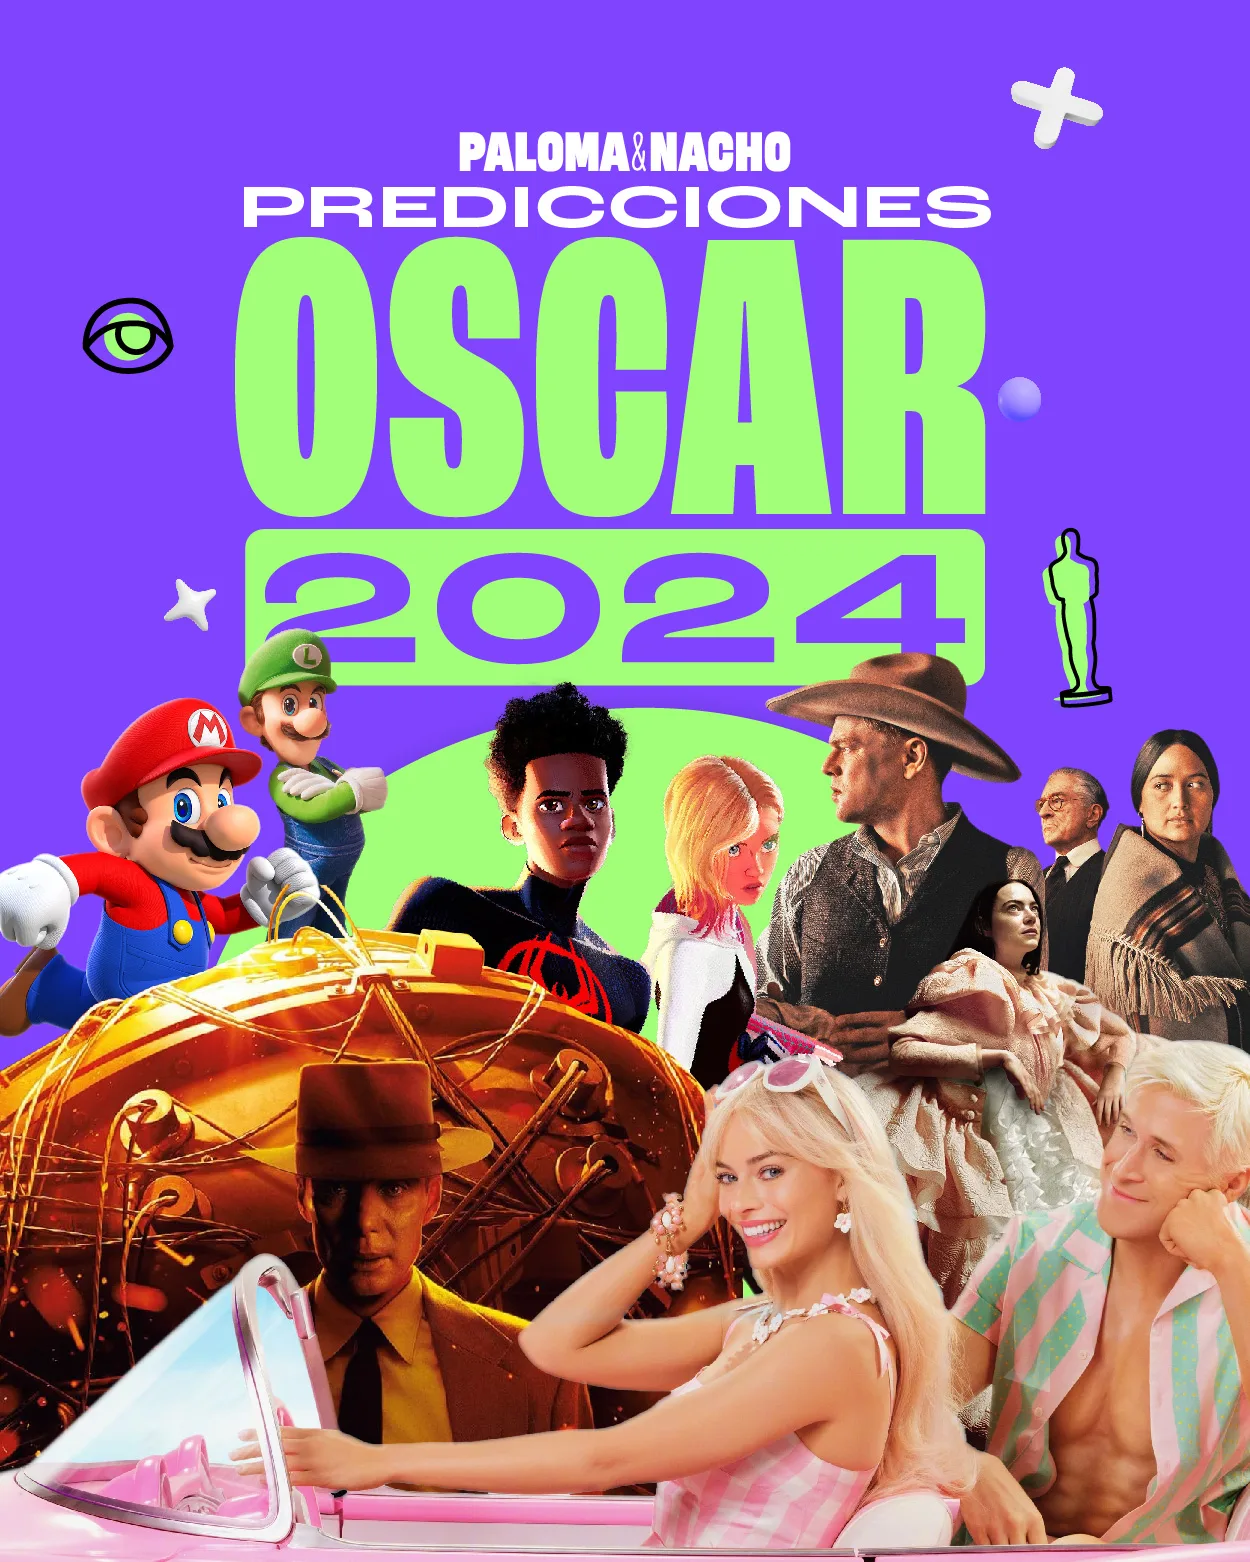 Predicciones Oscar 2024 Paloma & Nacho